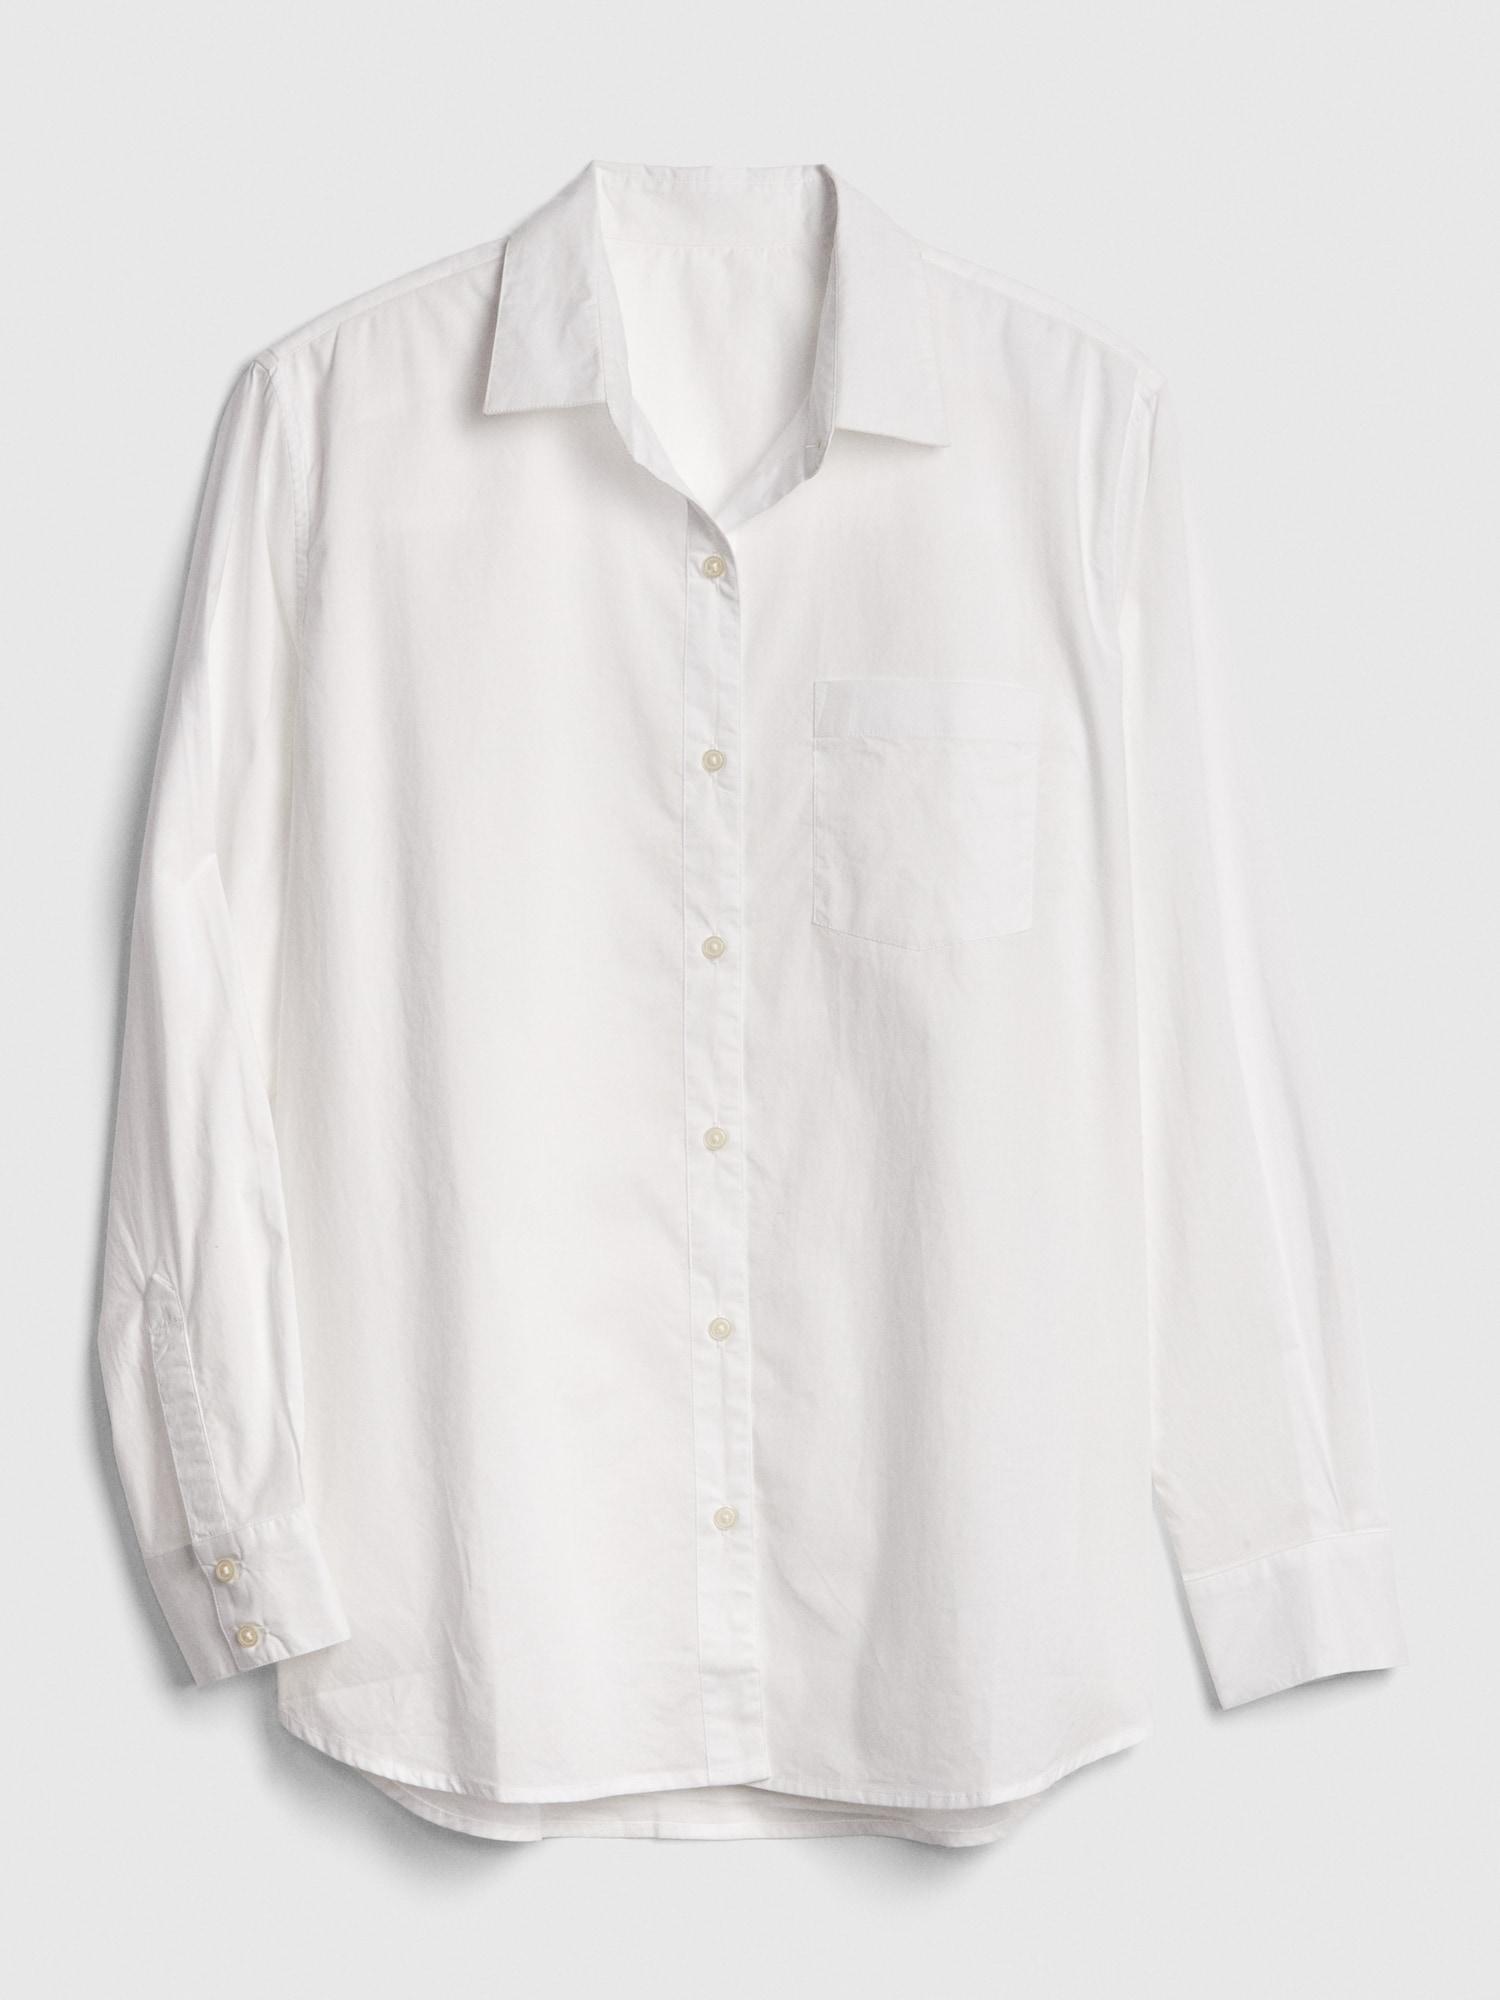 gap white blouse